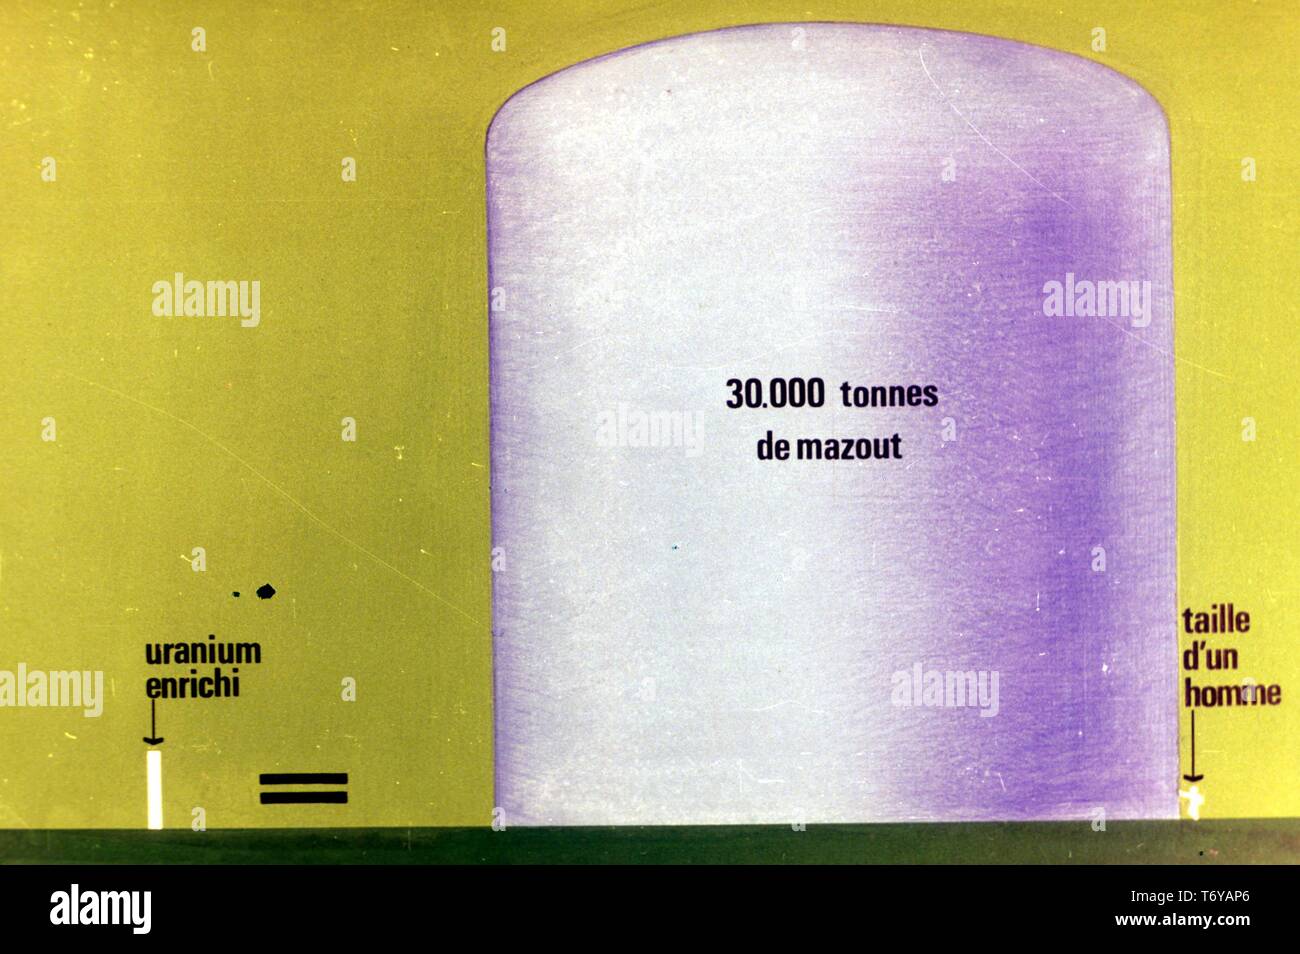 Schaltplan, in französischer Sprache beschriftet, das die Menge von angereichertem Uran benötigt genügend Kraftstoff eine 30 000-TONNEN-Behälter zu füllen, und den Vergleich der beiden auf die Größe eines menschlichen, 1975. Mit freundlicher Genehmigung des US-Ministeriums für Energie. () Stockfoto